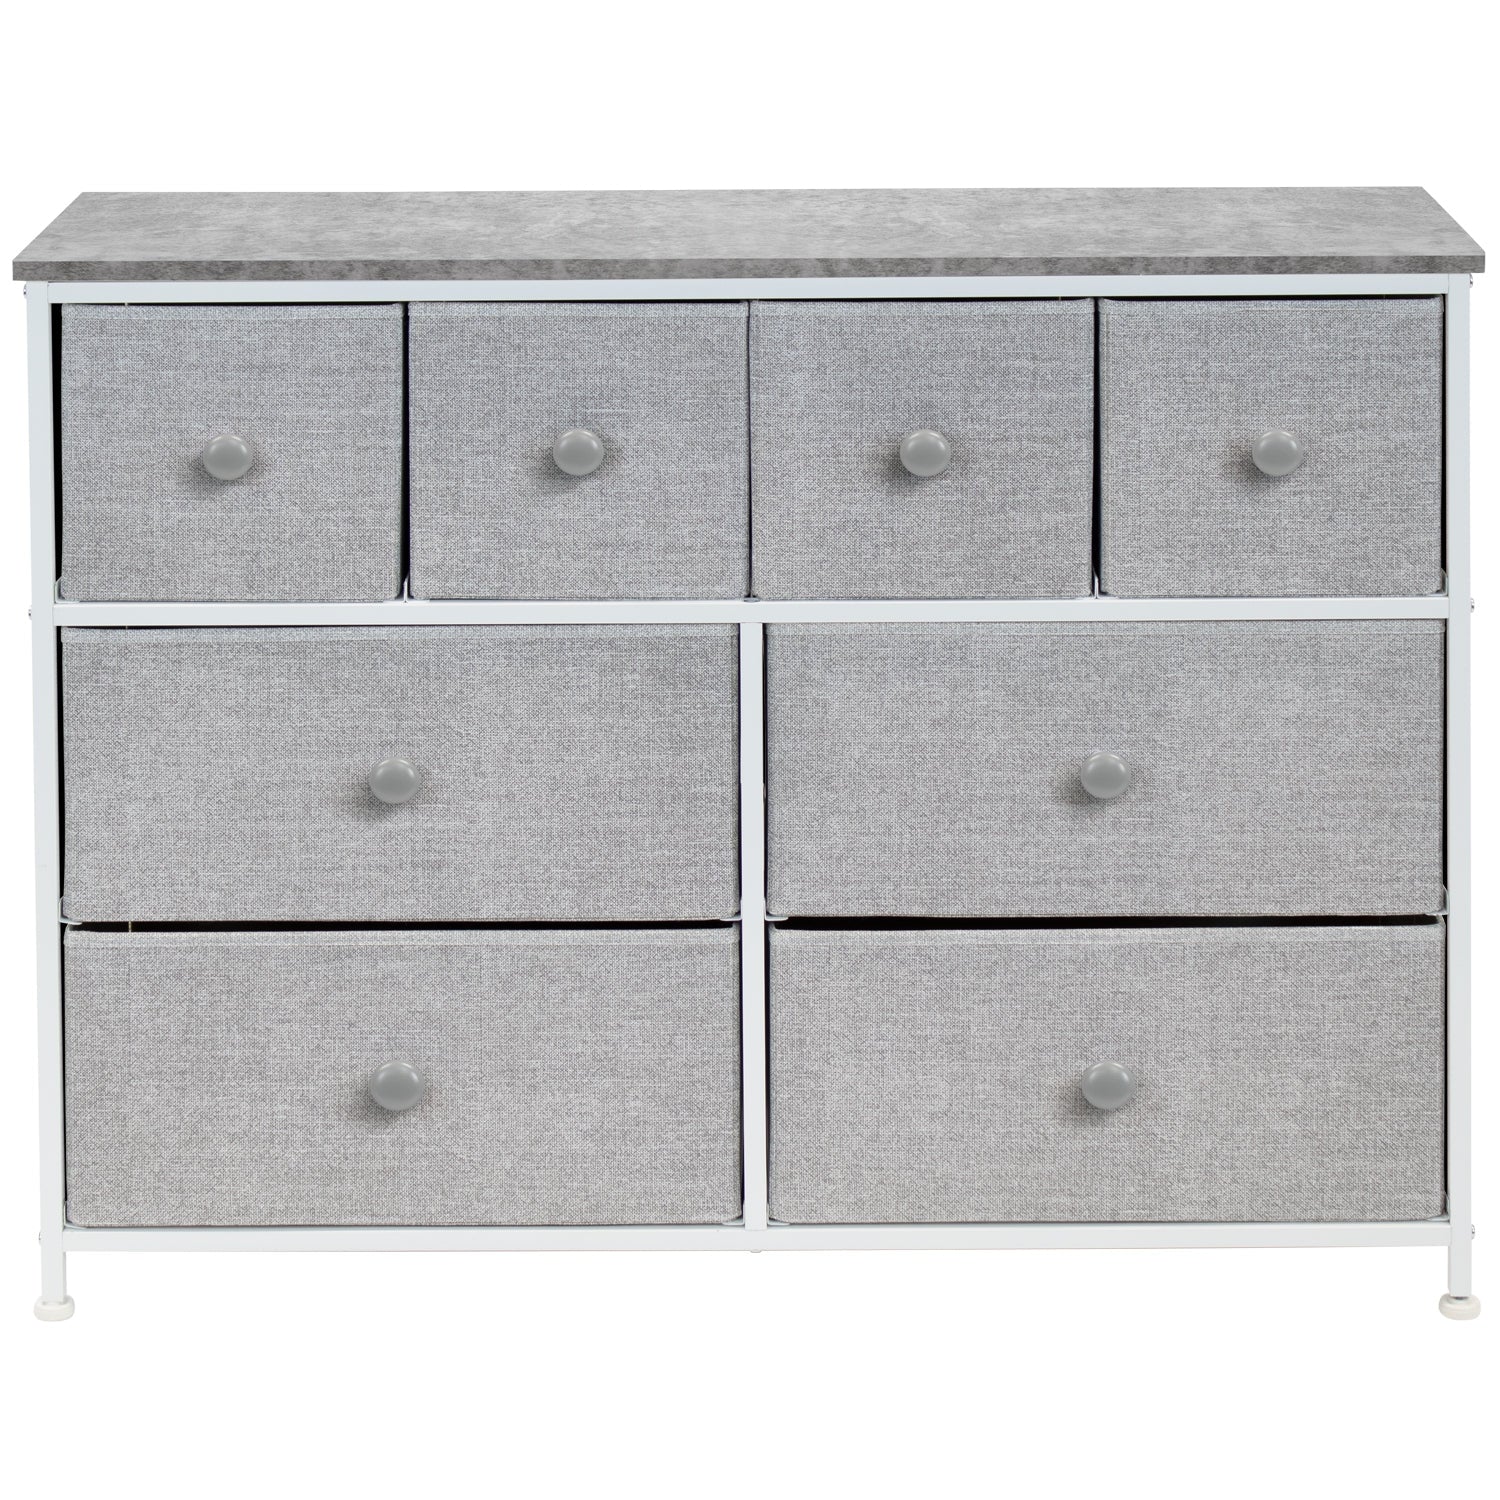 8-Drawer Chest Dresser w/knob Handles